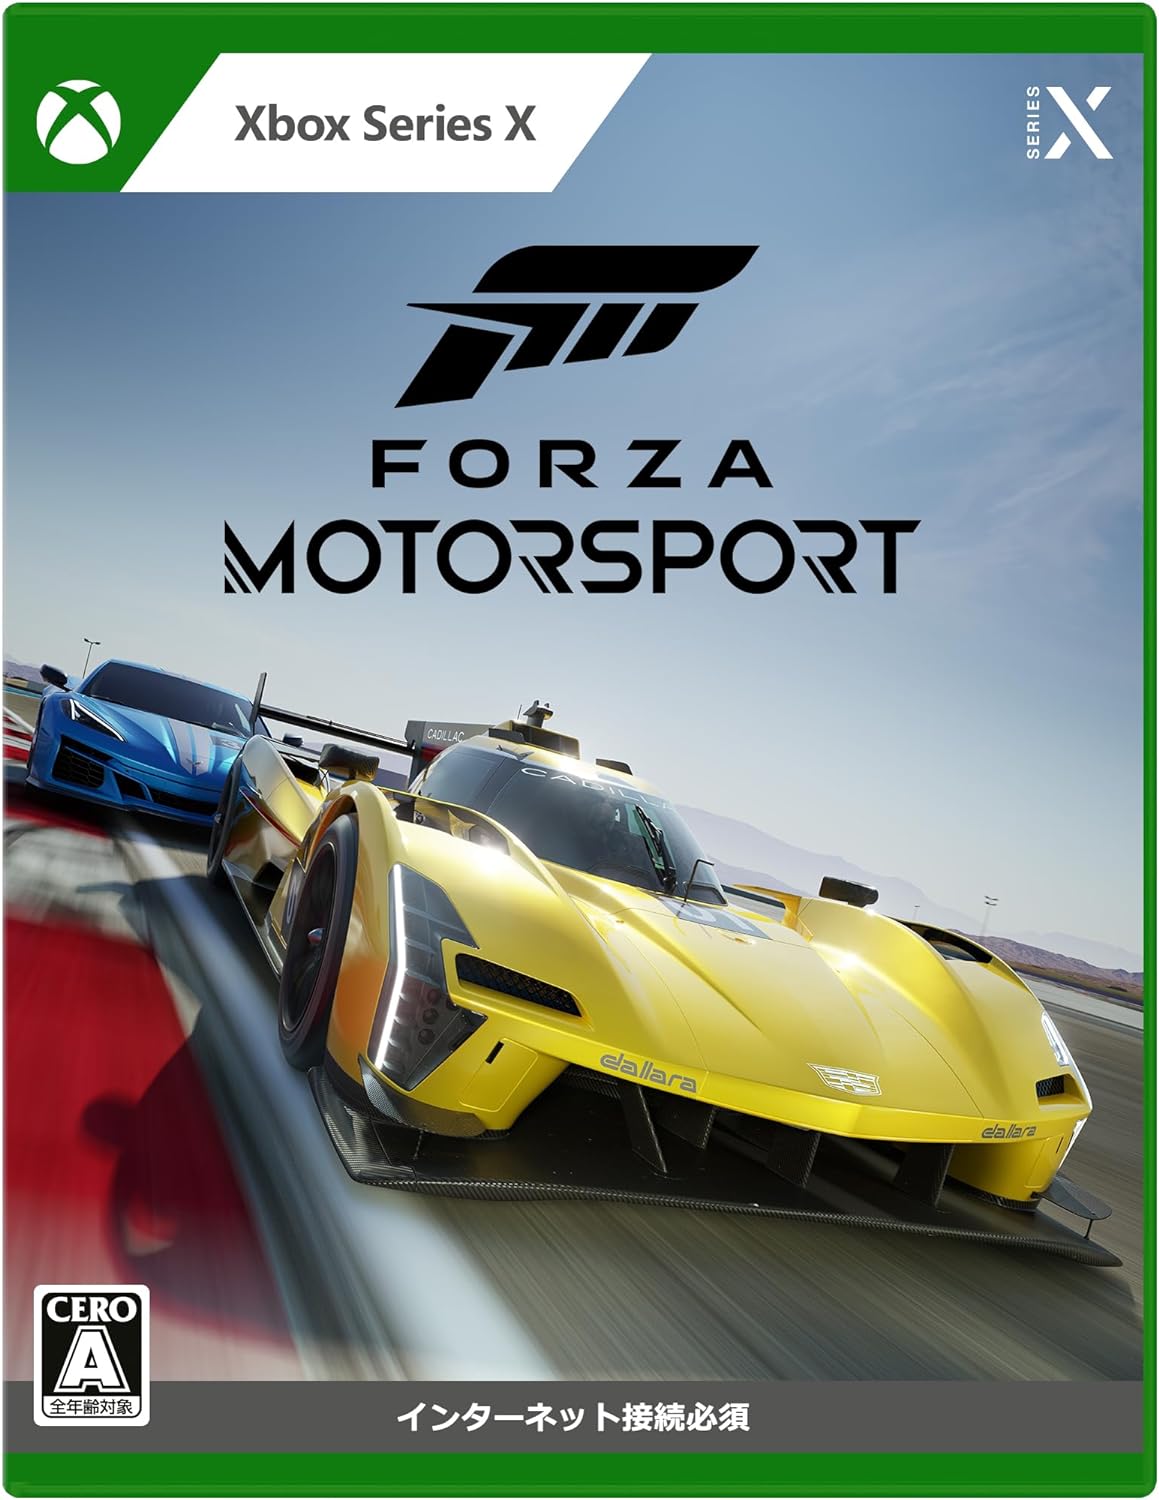 新品未開封品 Forza Motorsport 対応機種Xbox Series X VBH-0000 ...